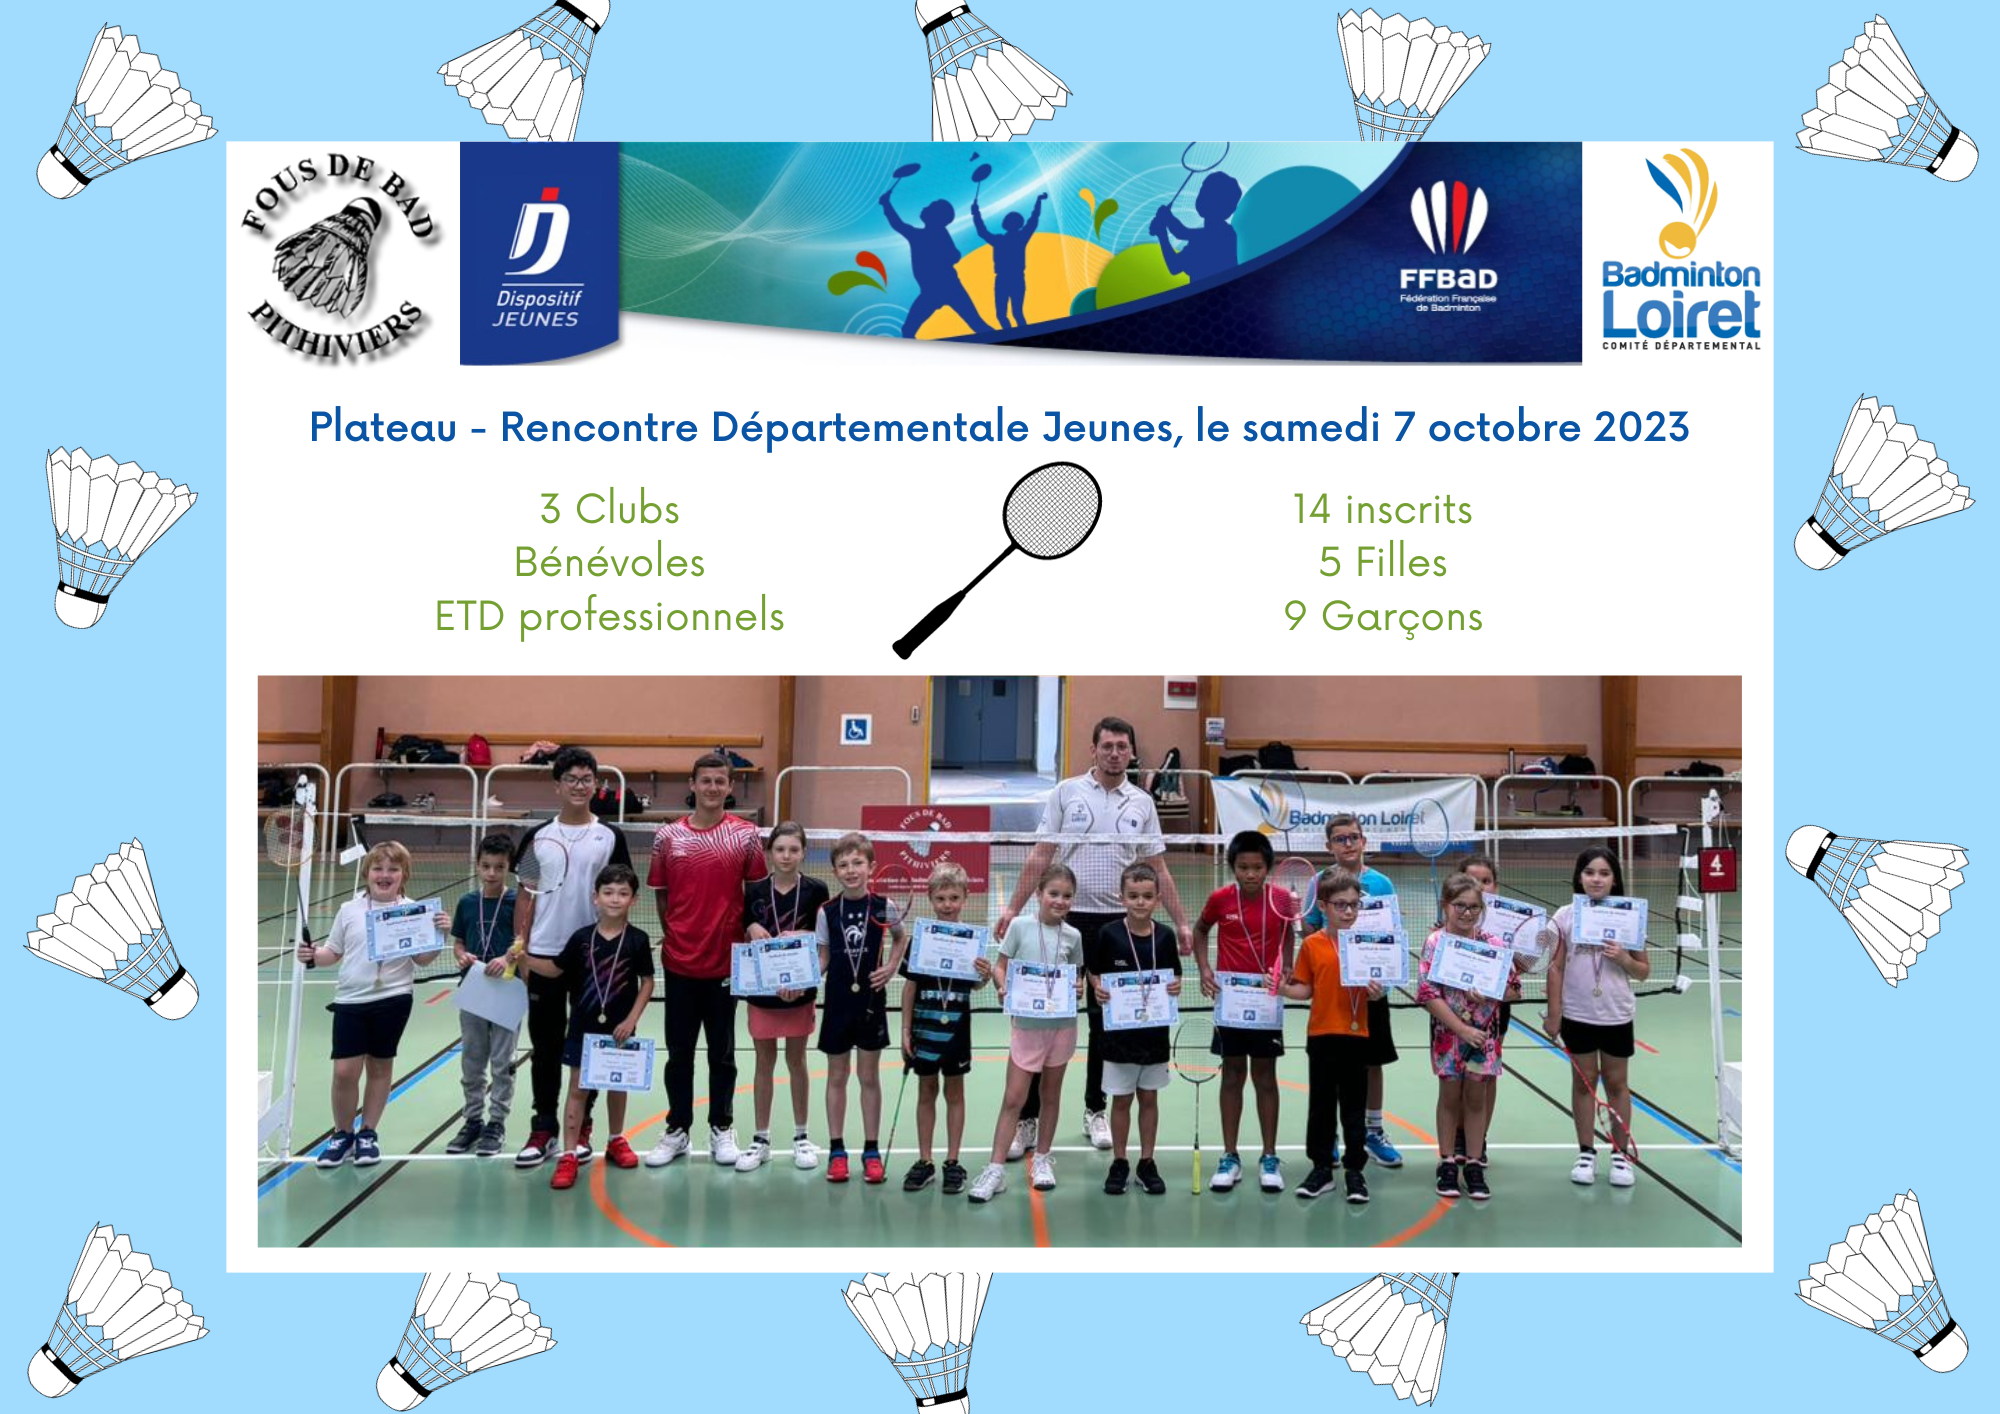 Fédération Française de Badminton Le matériel